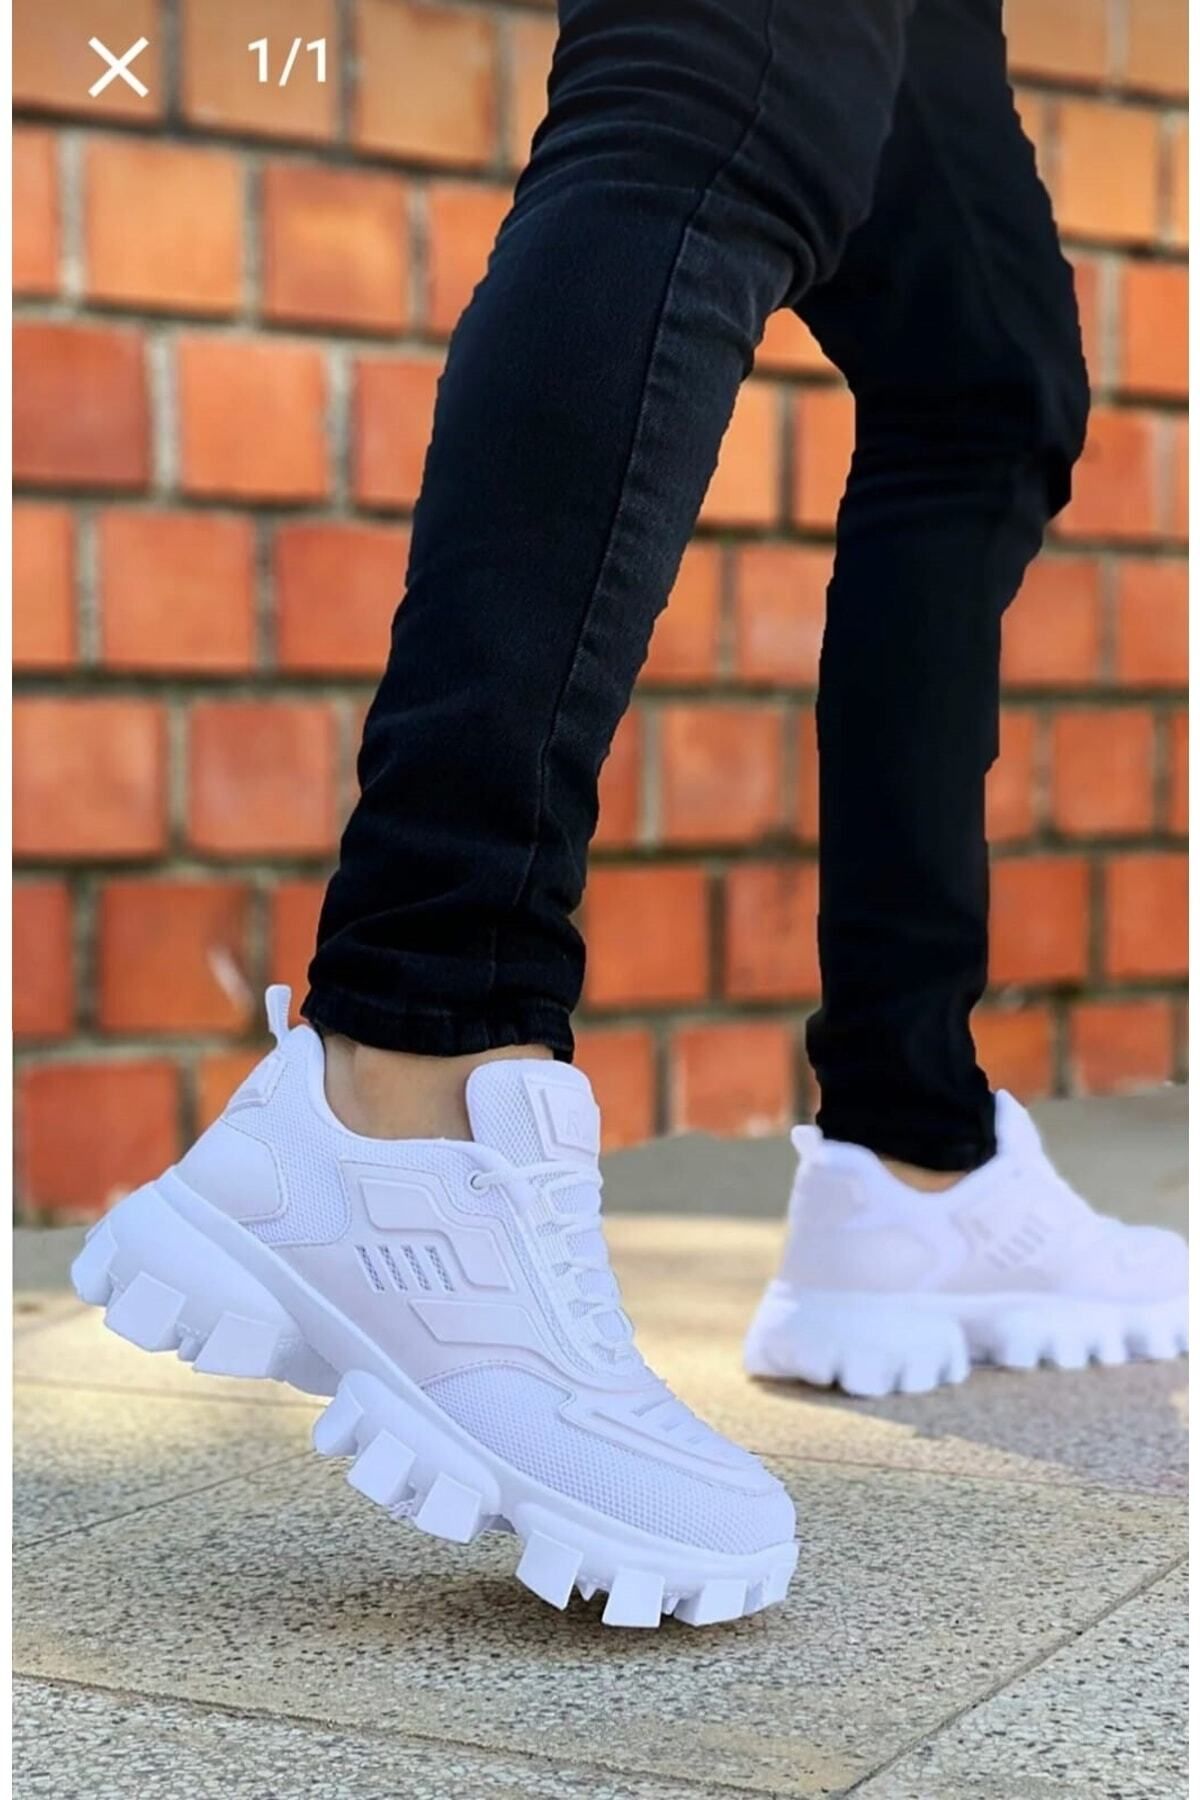 BAY ARMEDON Sneaker Beyaz Dozer Triko Kauçuk Detay Unisex Spor Ayakkabı Kalın Tırtıklı, Yüksek Taban Ayakkabı